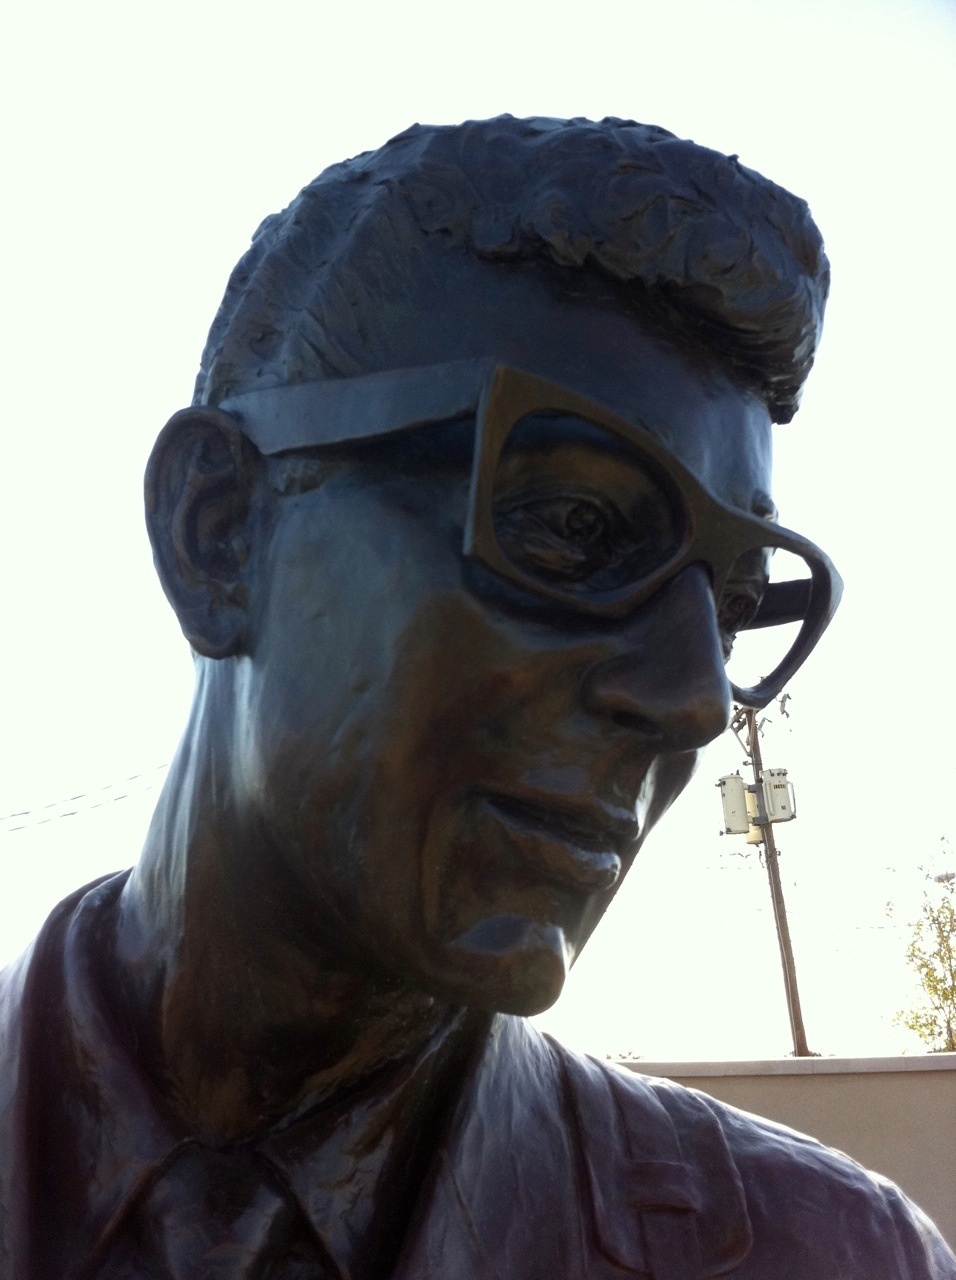 Buddy Holly (Lubbock, TX).